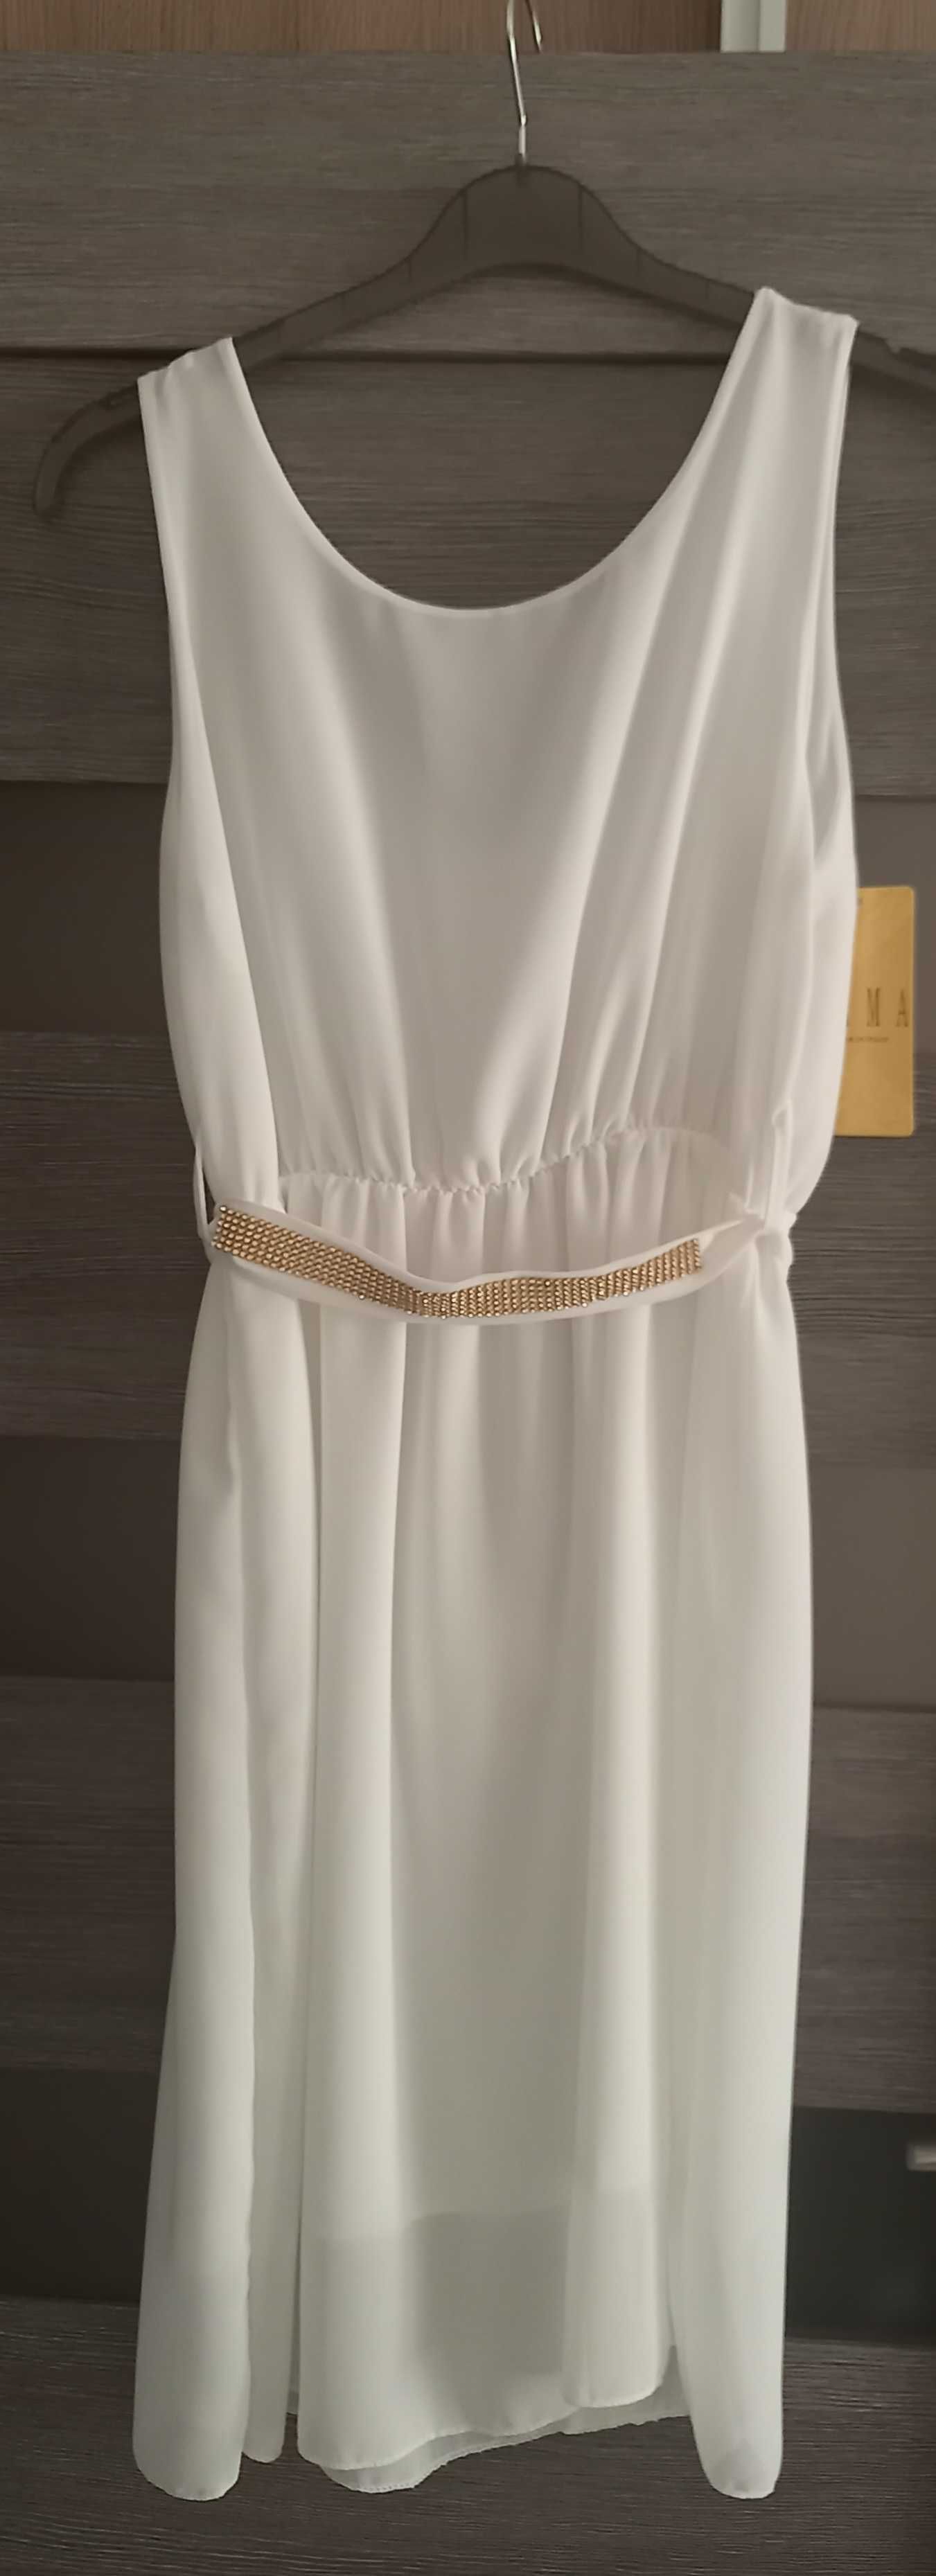 Sukienka biała firmy Emma